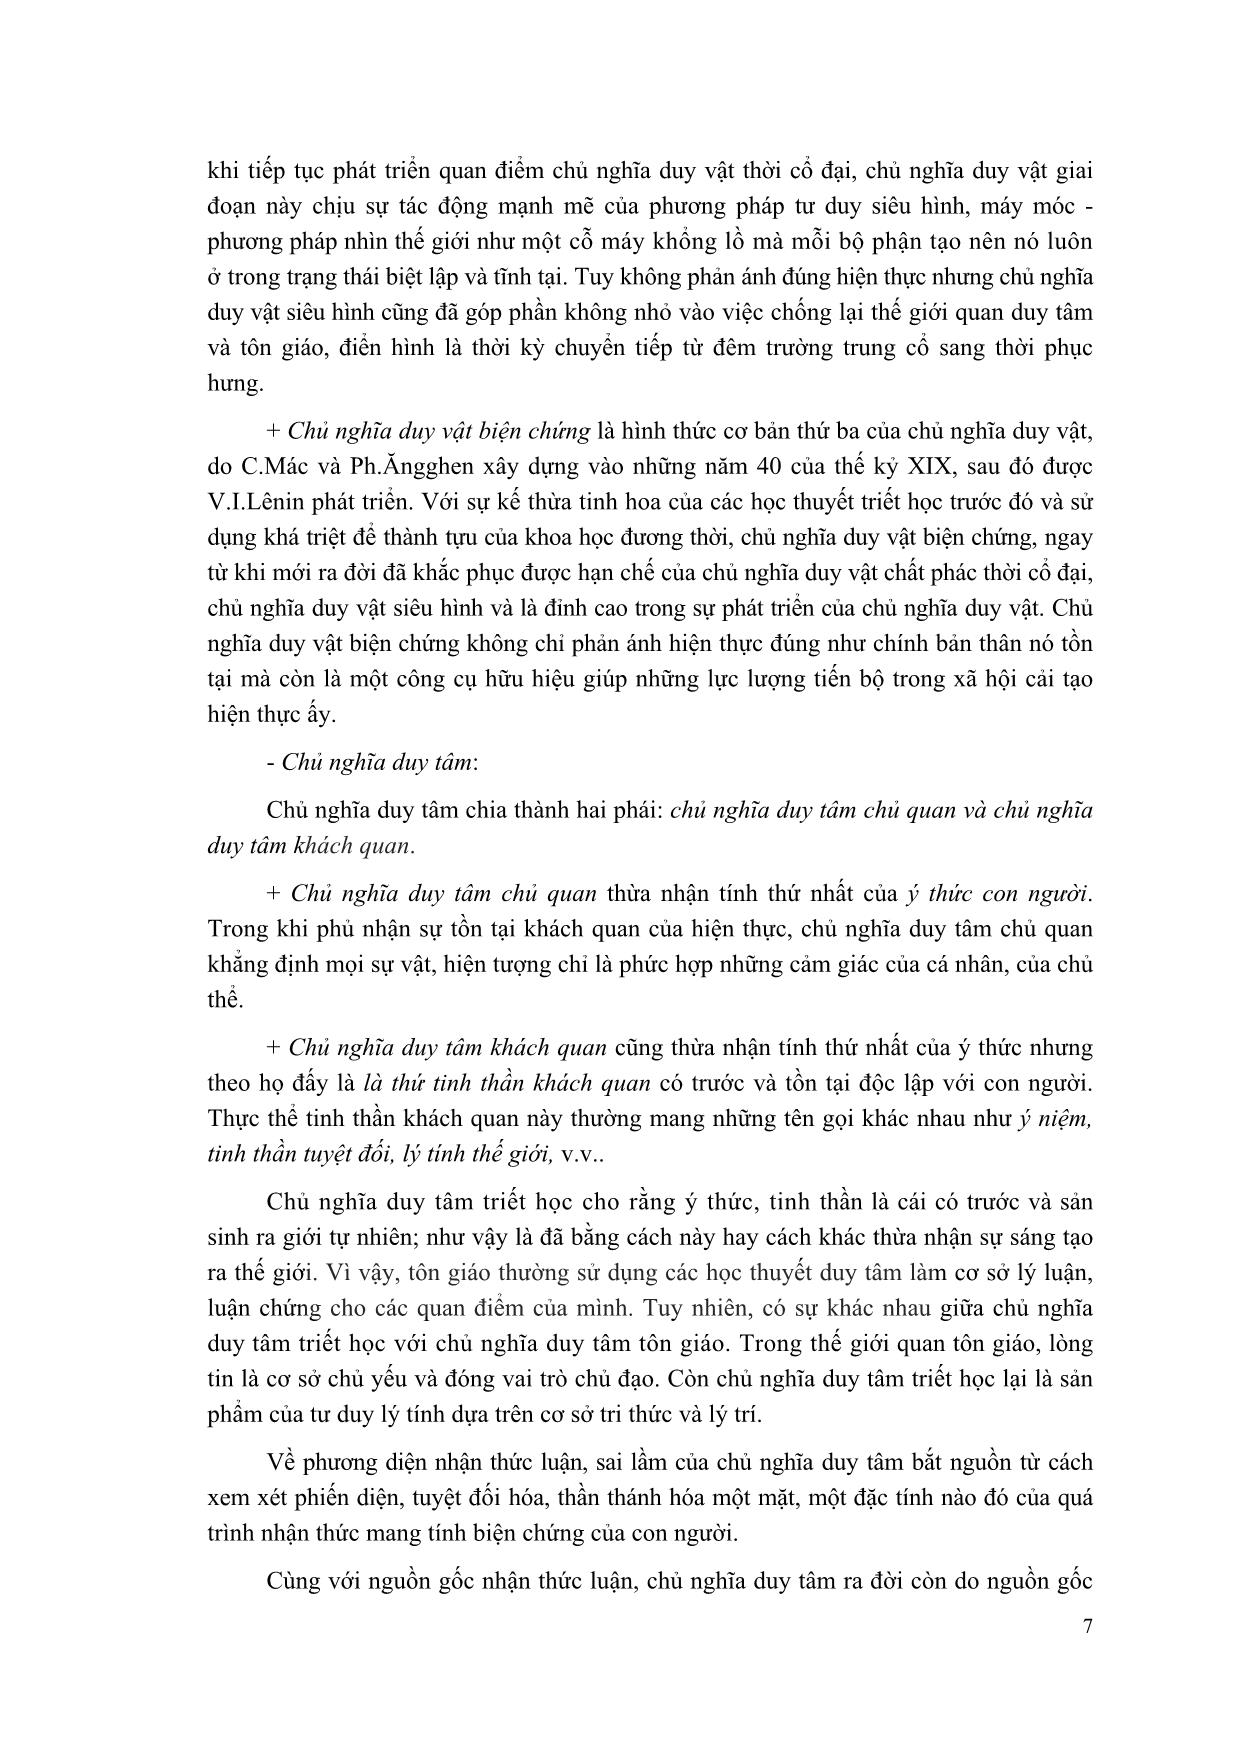 Giáo trình Triết học Mác-Lênin (Mới) trang 8